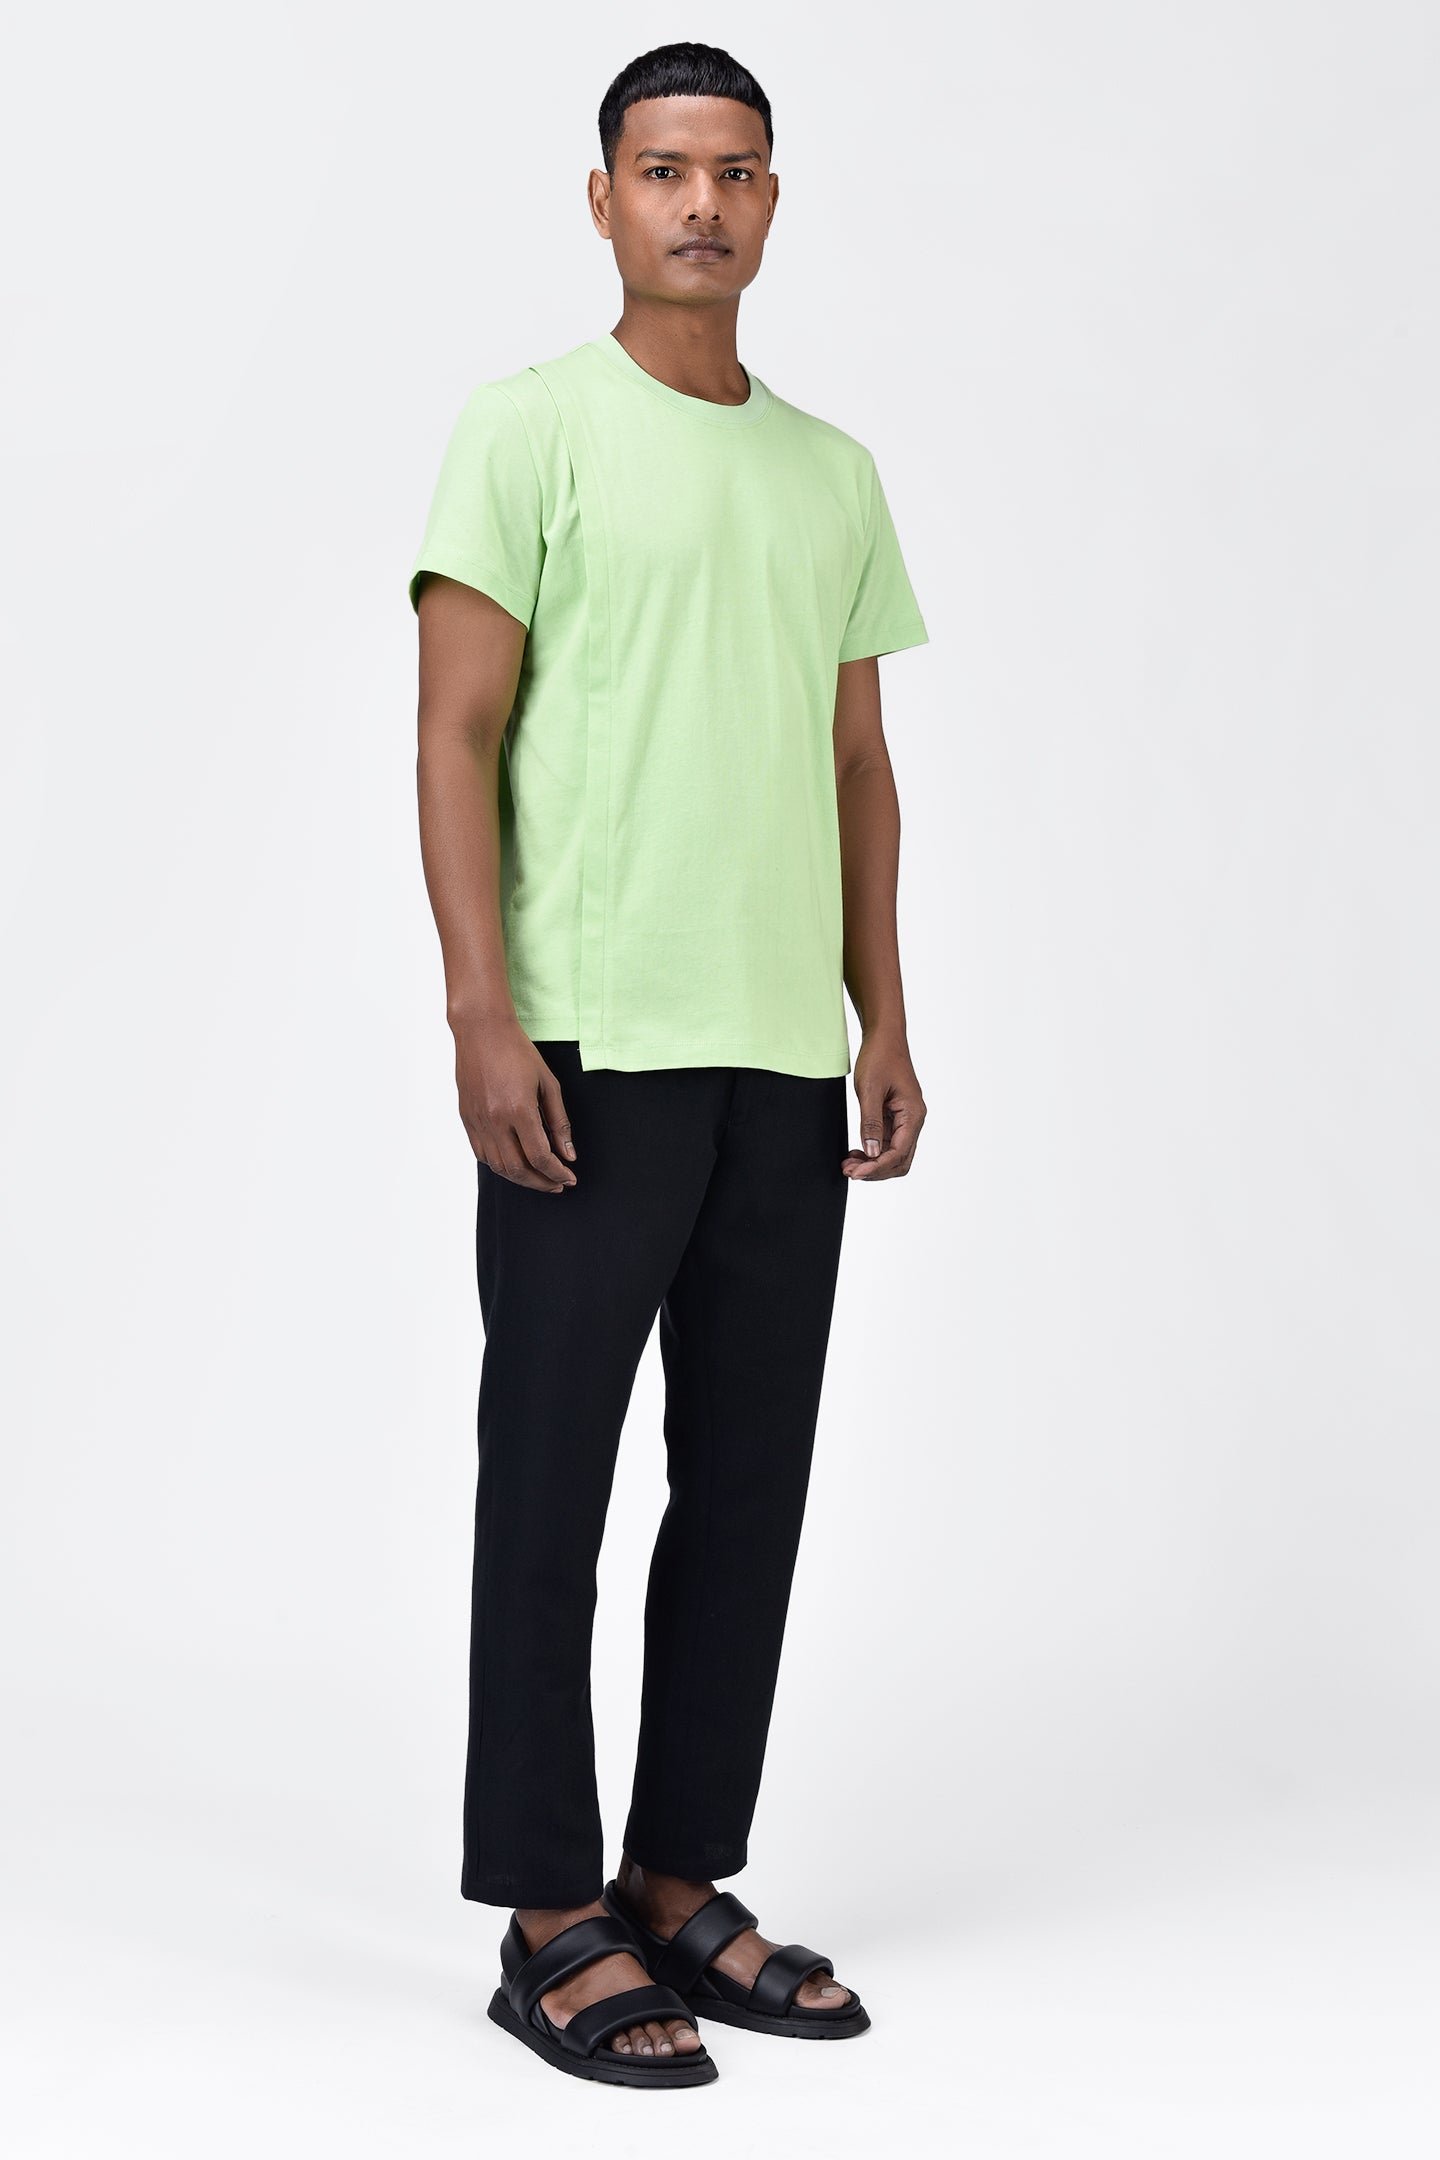 Men's Mint Green Cotton Single Jersey T-Shirt